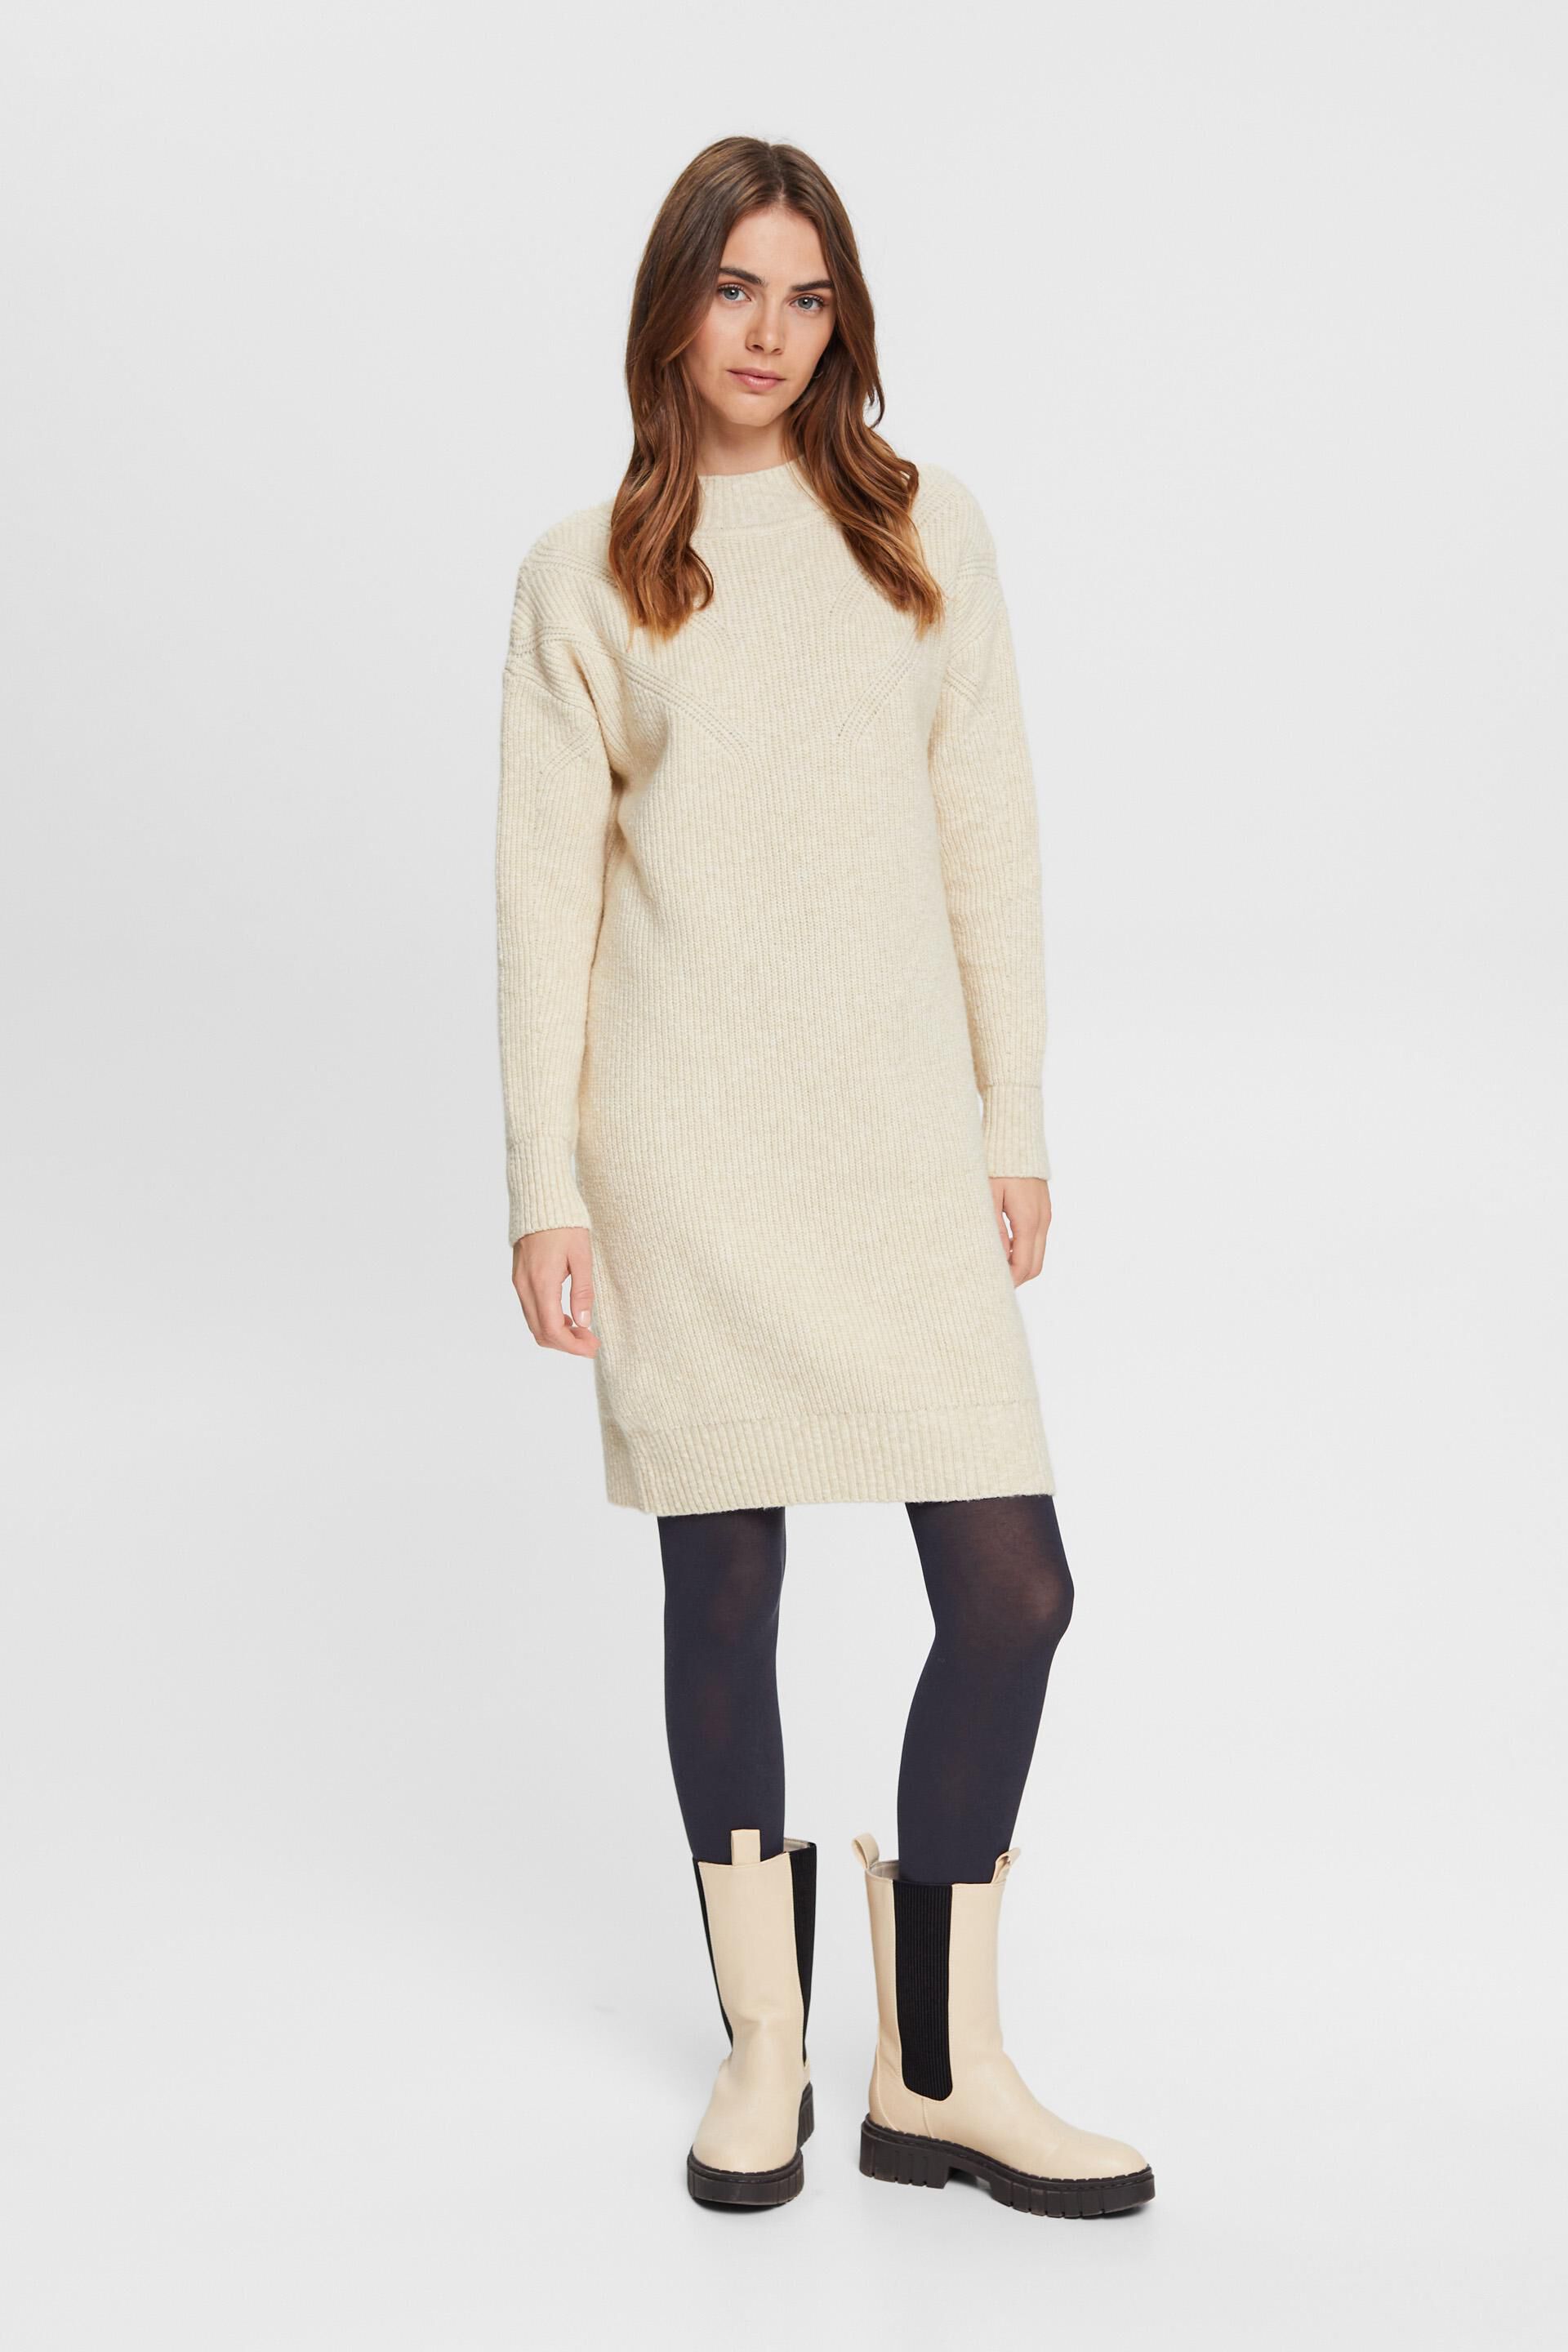 Esprit Online Store Blickdichte Leggings Baumwollmischung aus